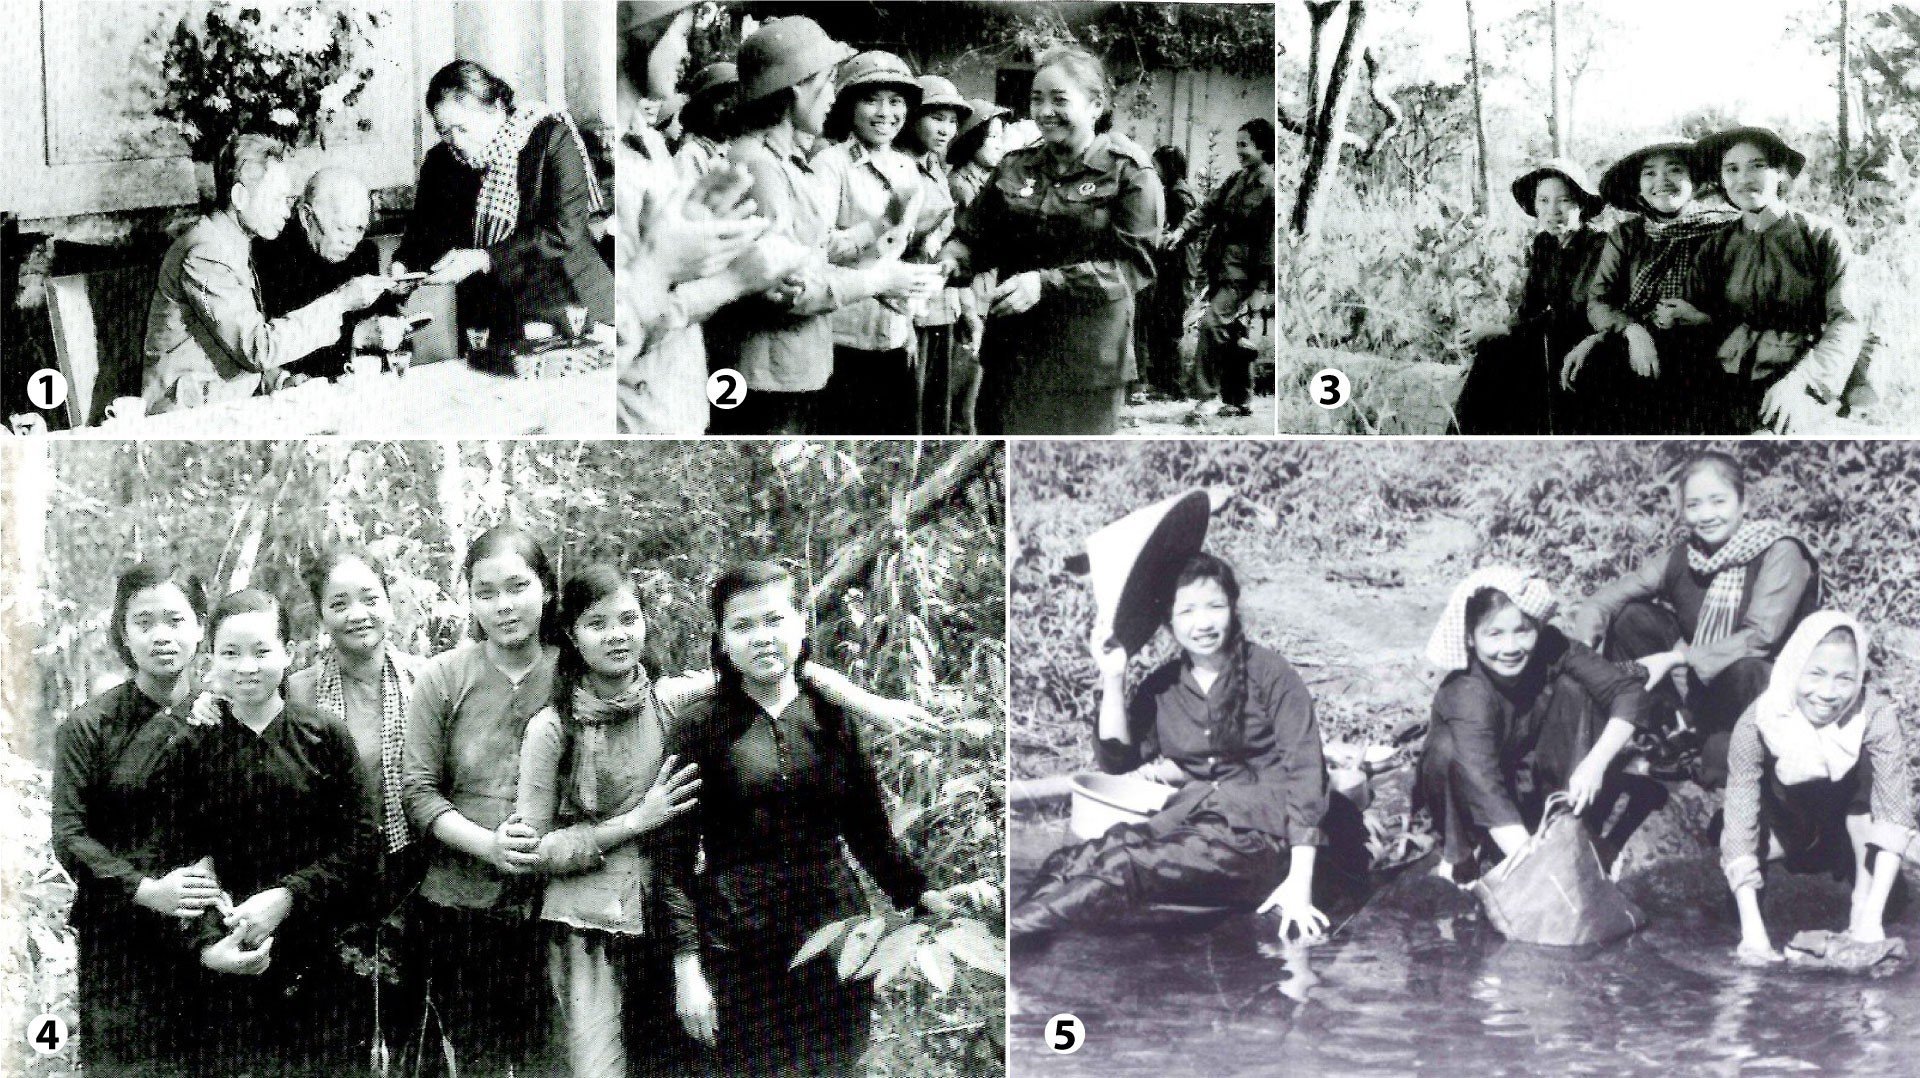 Các nữ tướng Quân đội nhân dân Việt Nam